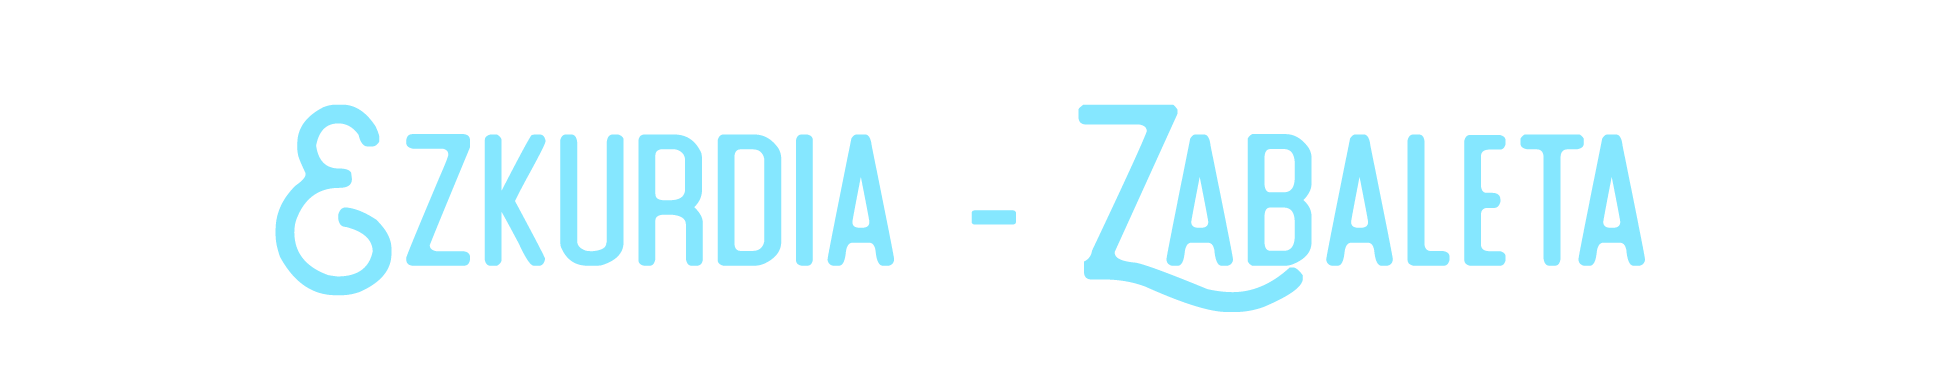 Ezkurdia - Zabaleta